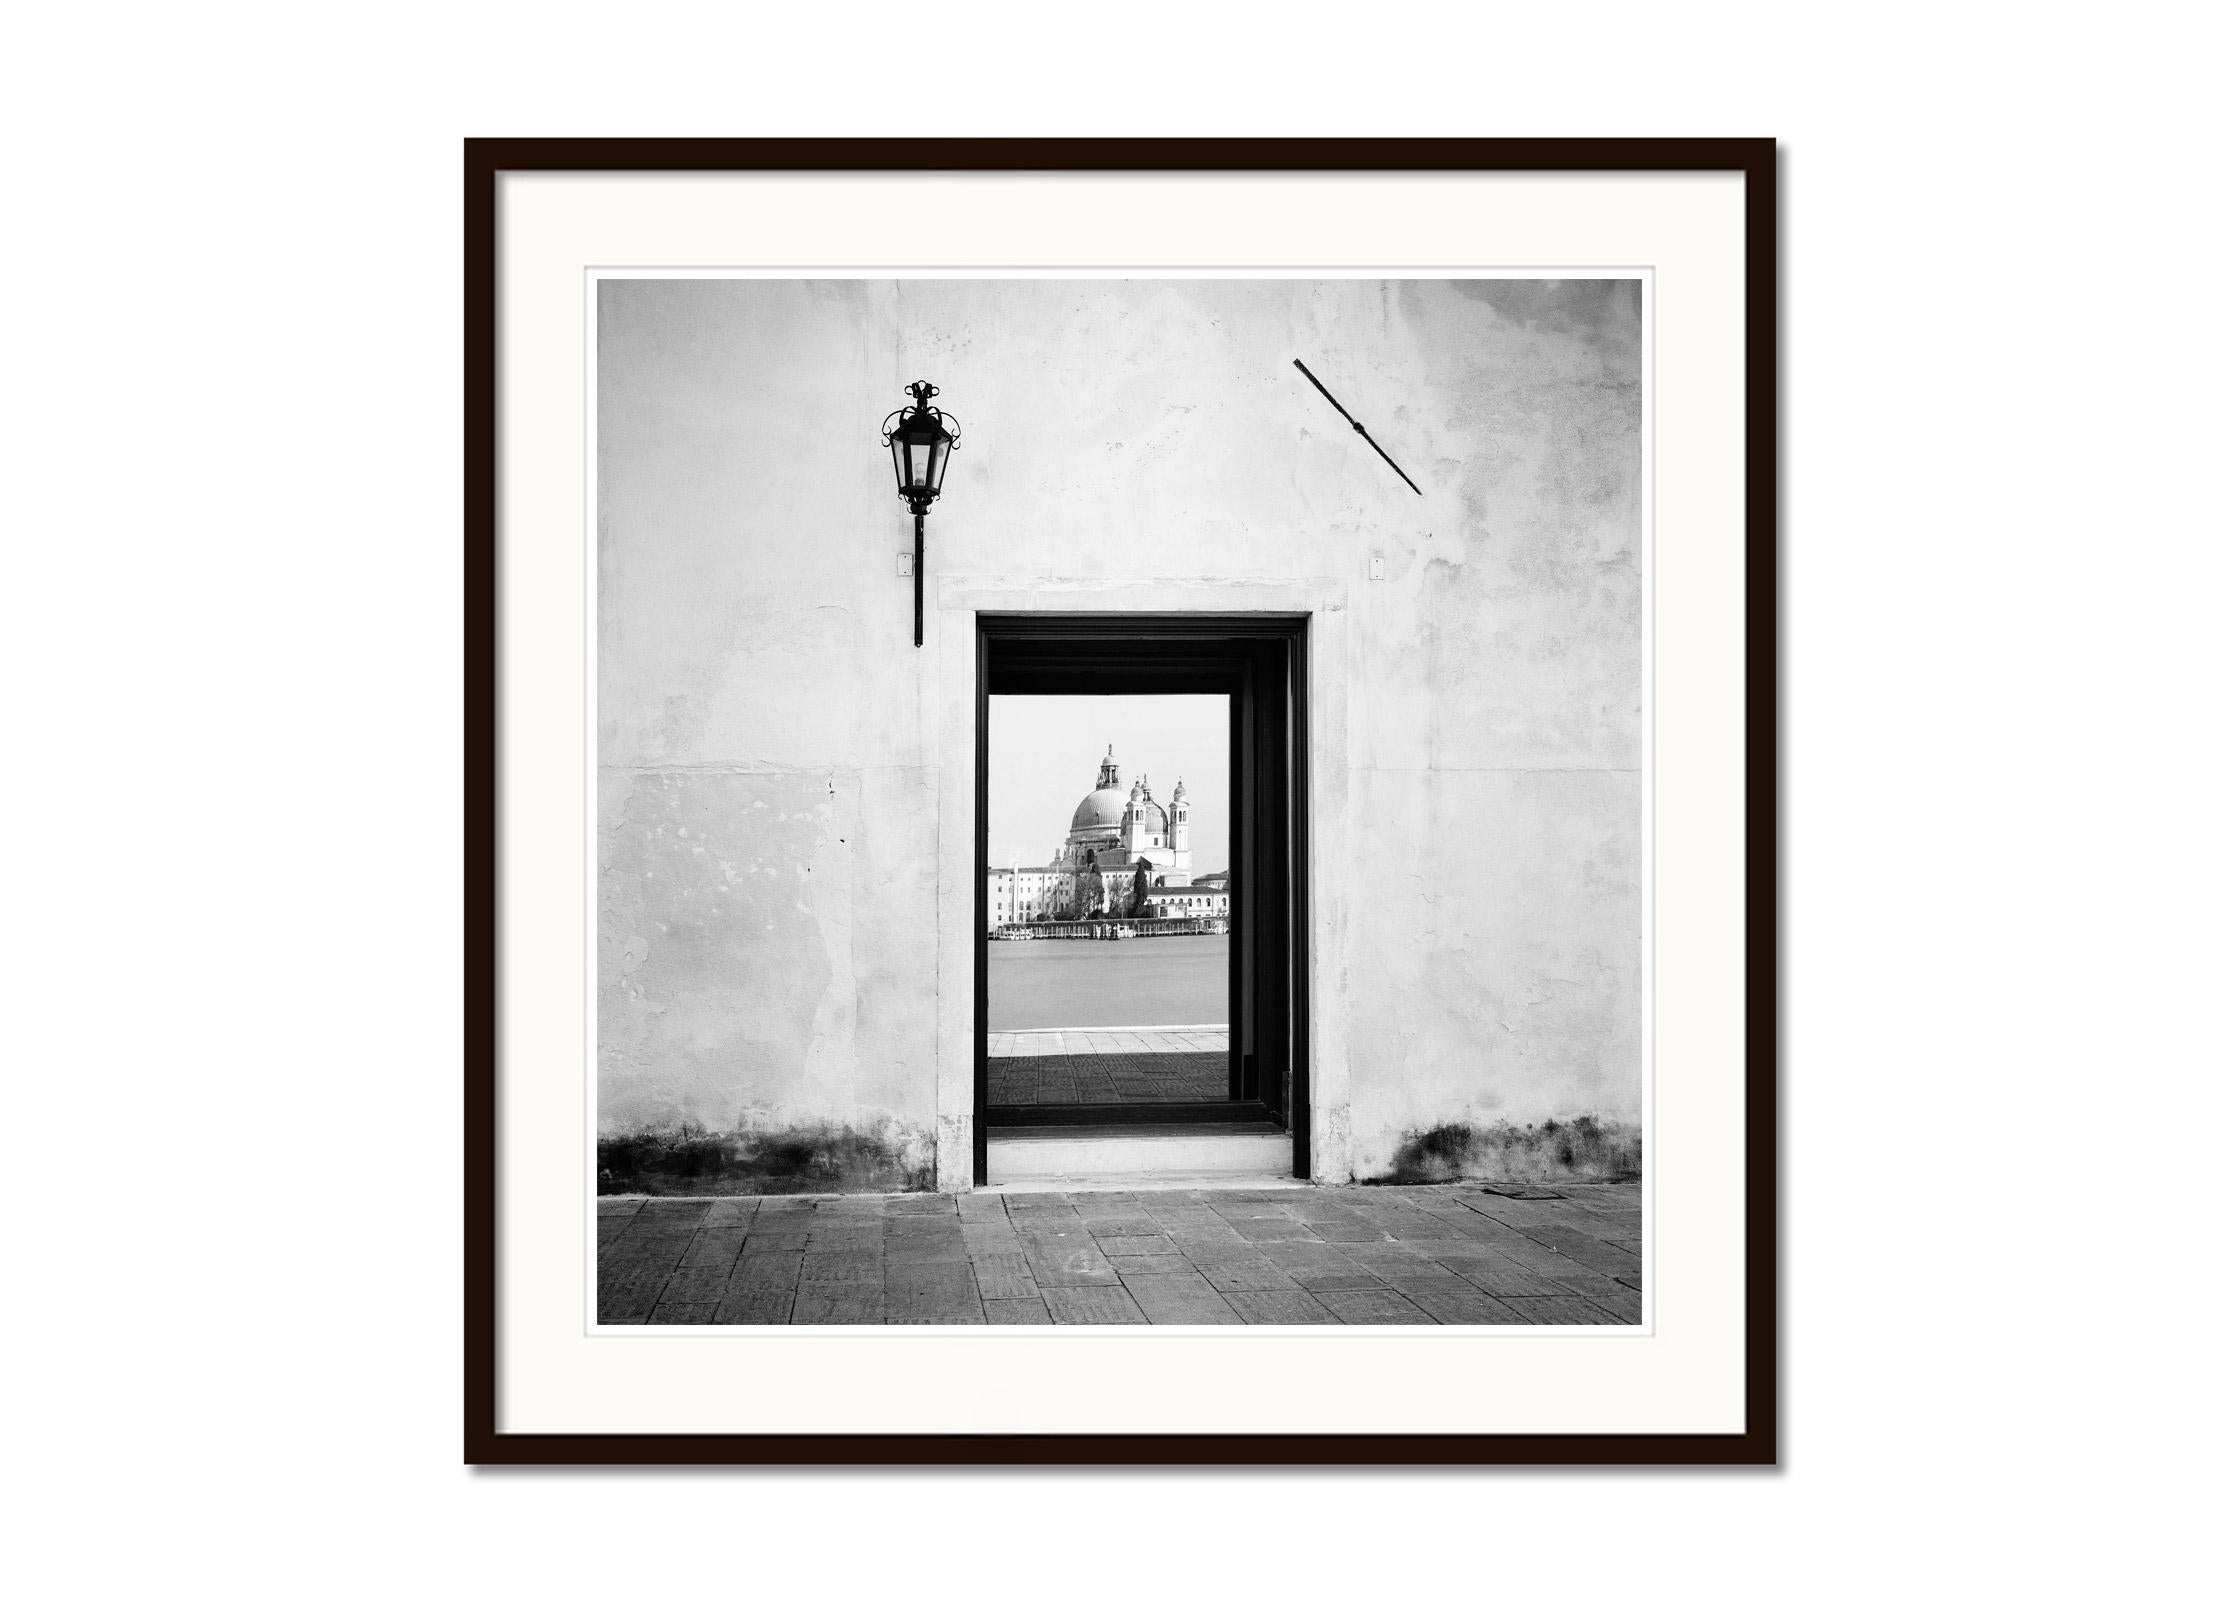 Reflection, Venedig, Italien, Schwarz-Weiß-Fotografiedruck der bildenden Kunst (Grau), Landscape Photograph, von Gerald Berghammer